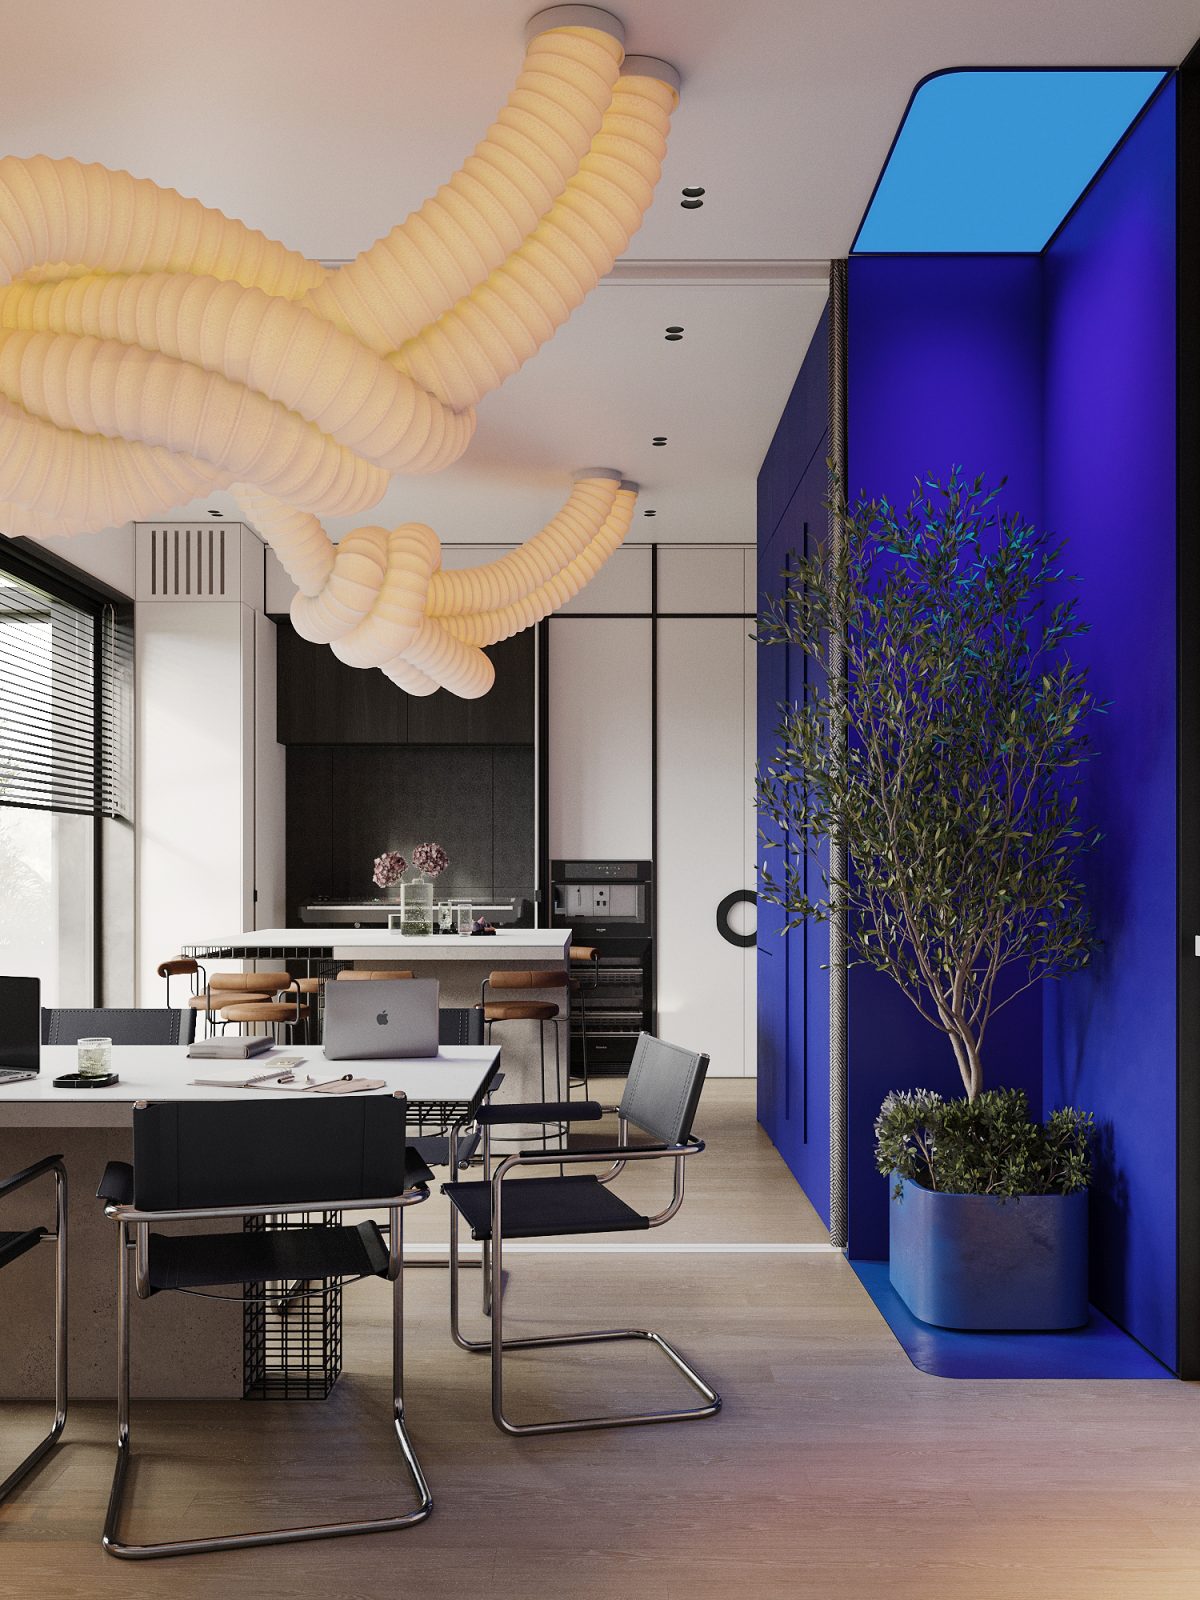 Журнал INTERIOR DESIGN включив дизайн офісу від ZIKZAK Architects до кращих проєктів нових робочих просторів зі всього світу 1 1